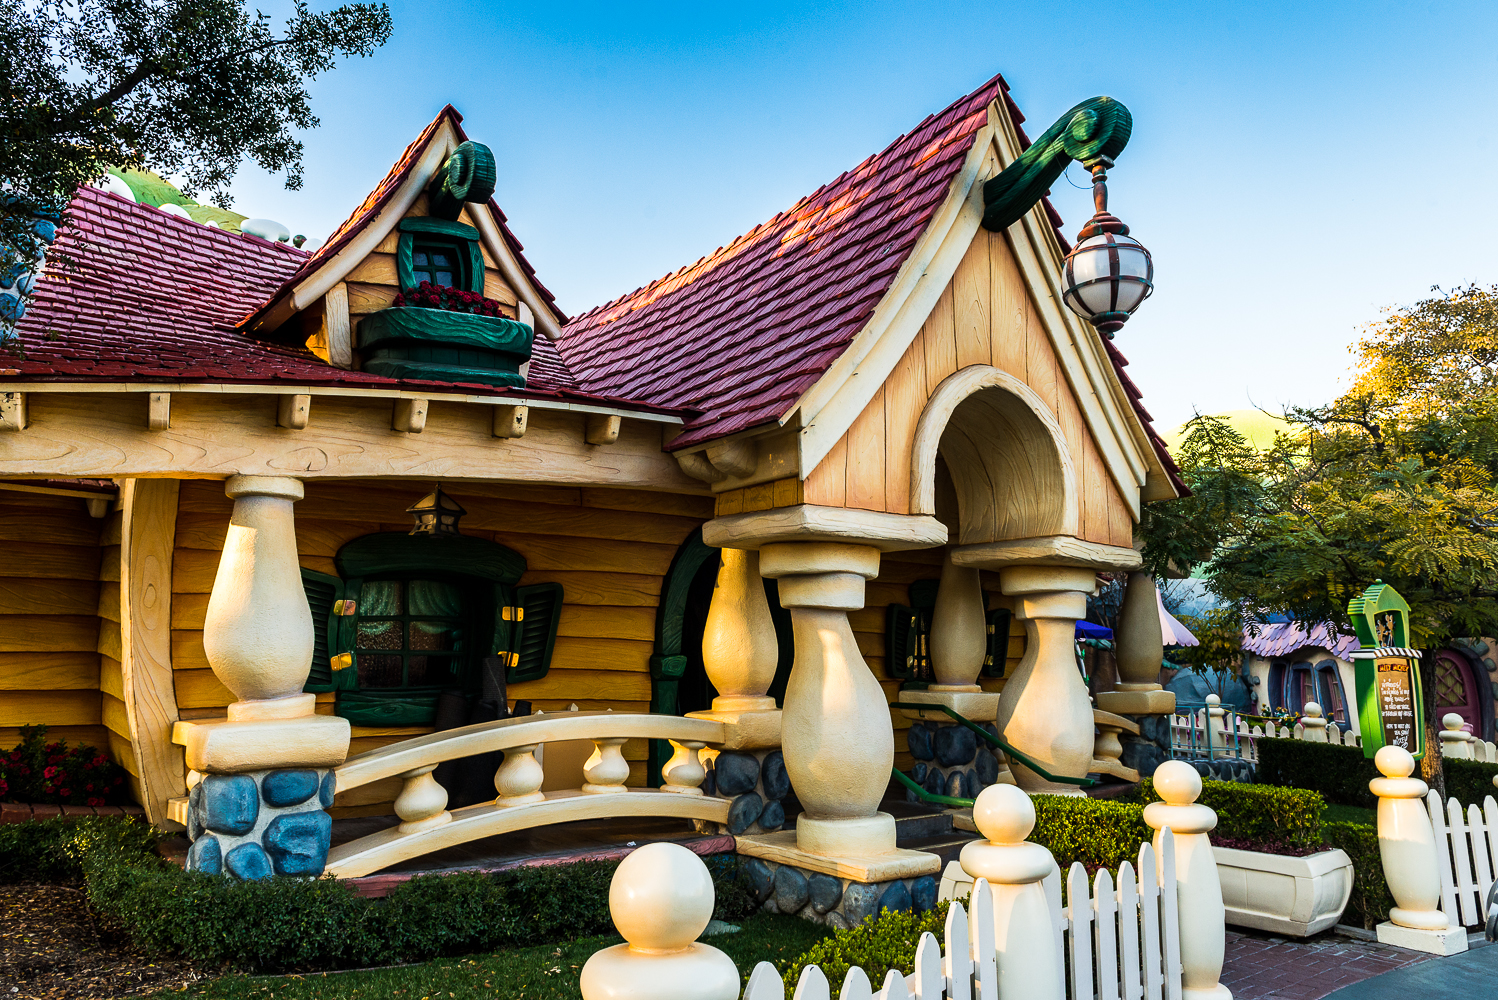 Visit Disneyland Park in Anaheim California.